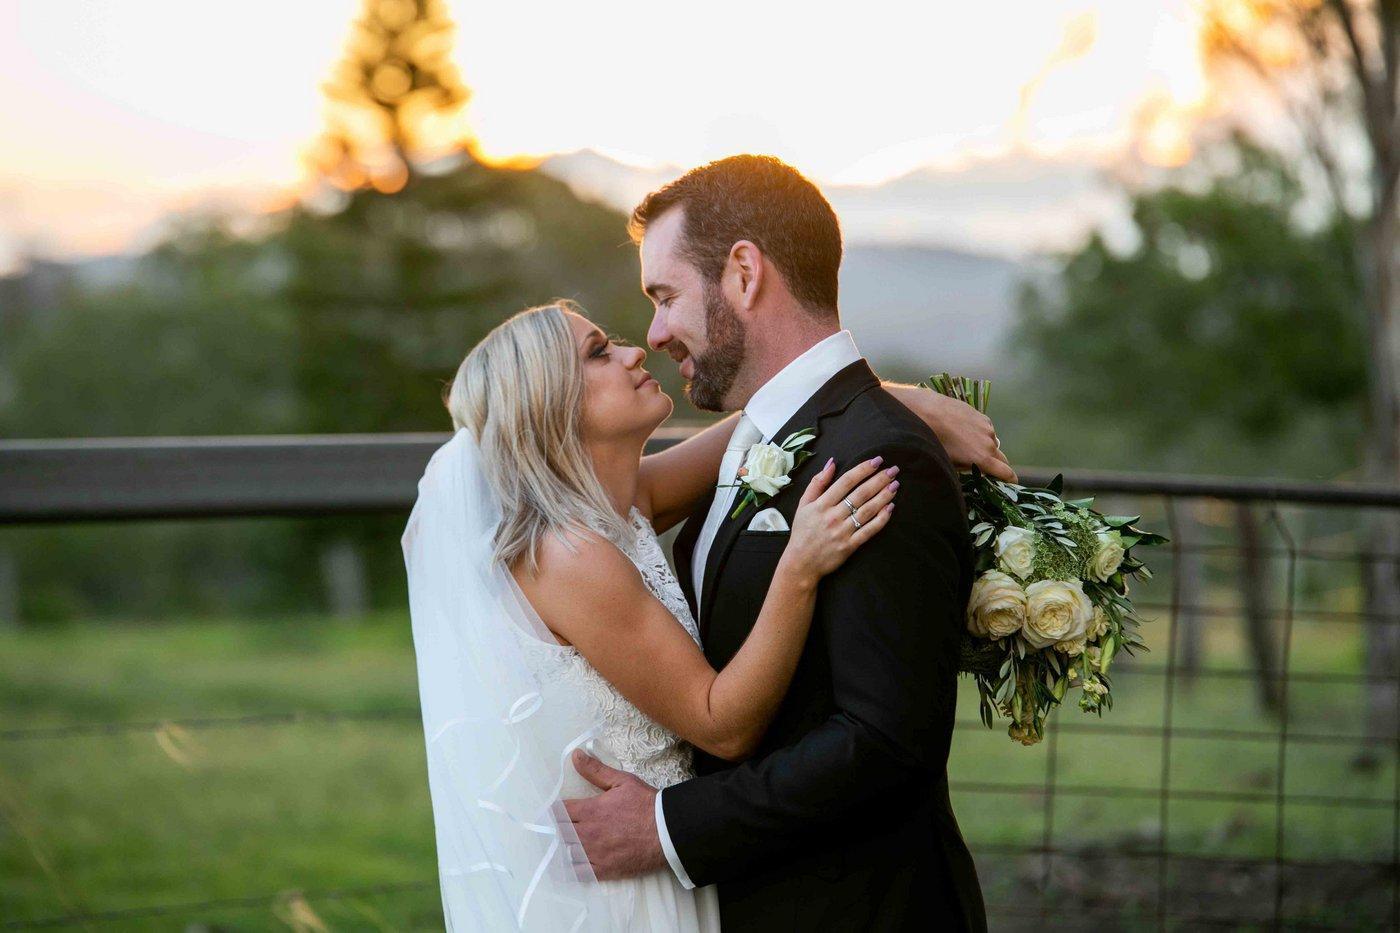 Wedding Photography couple embracing